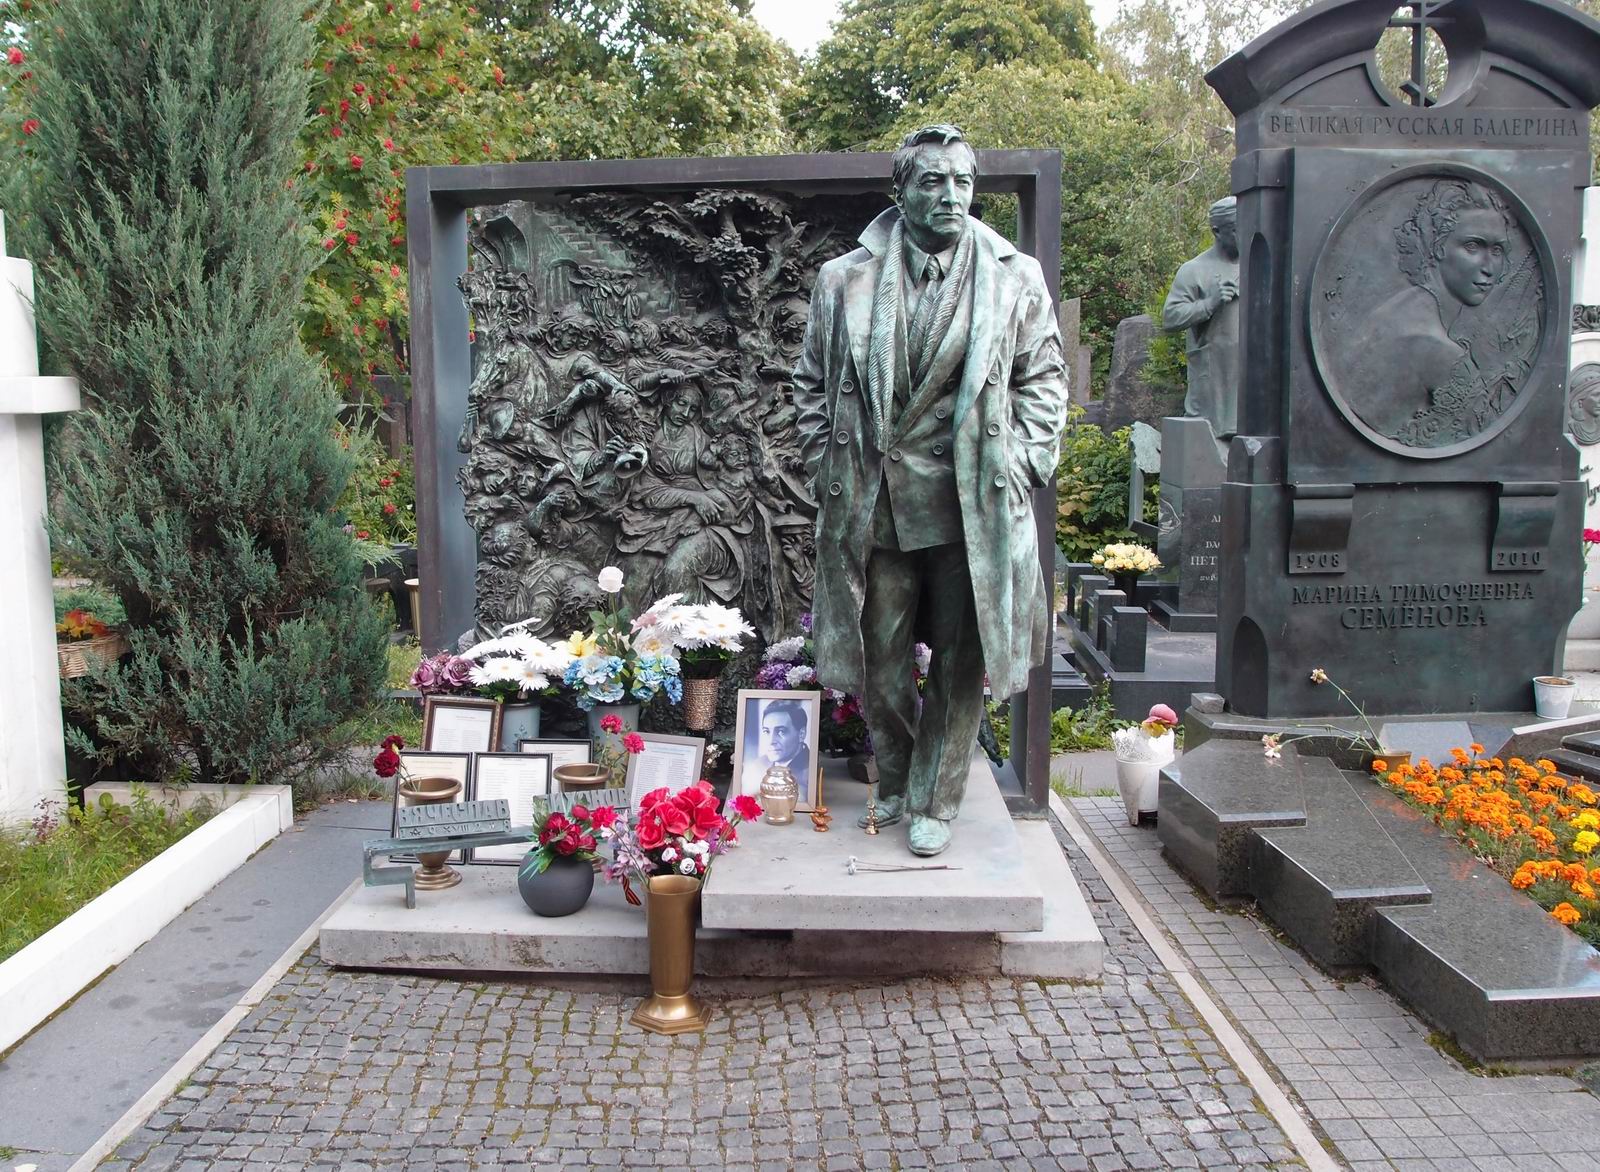 Памятник на могиле Тихонова В.В. (1928-2009), ск. А.Благовестнов, на Новодевичьем кладбище (10-10-5). Нажмите левую кнопку мыши чтобы увидеть фрагмент памятника.